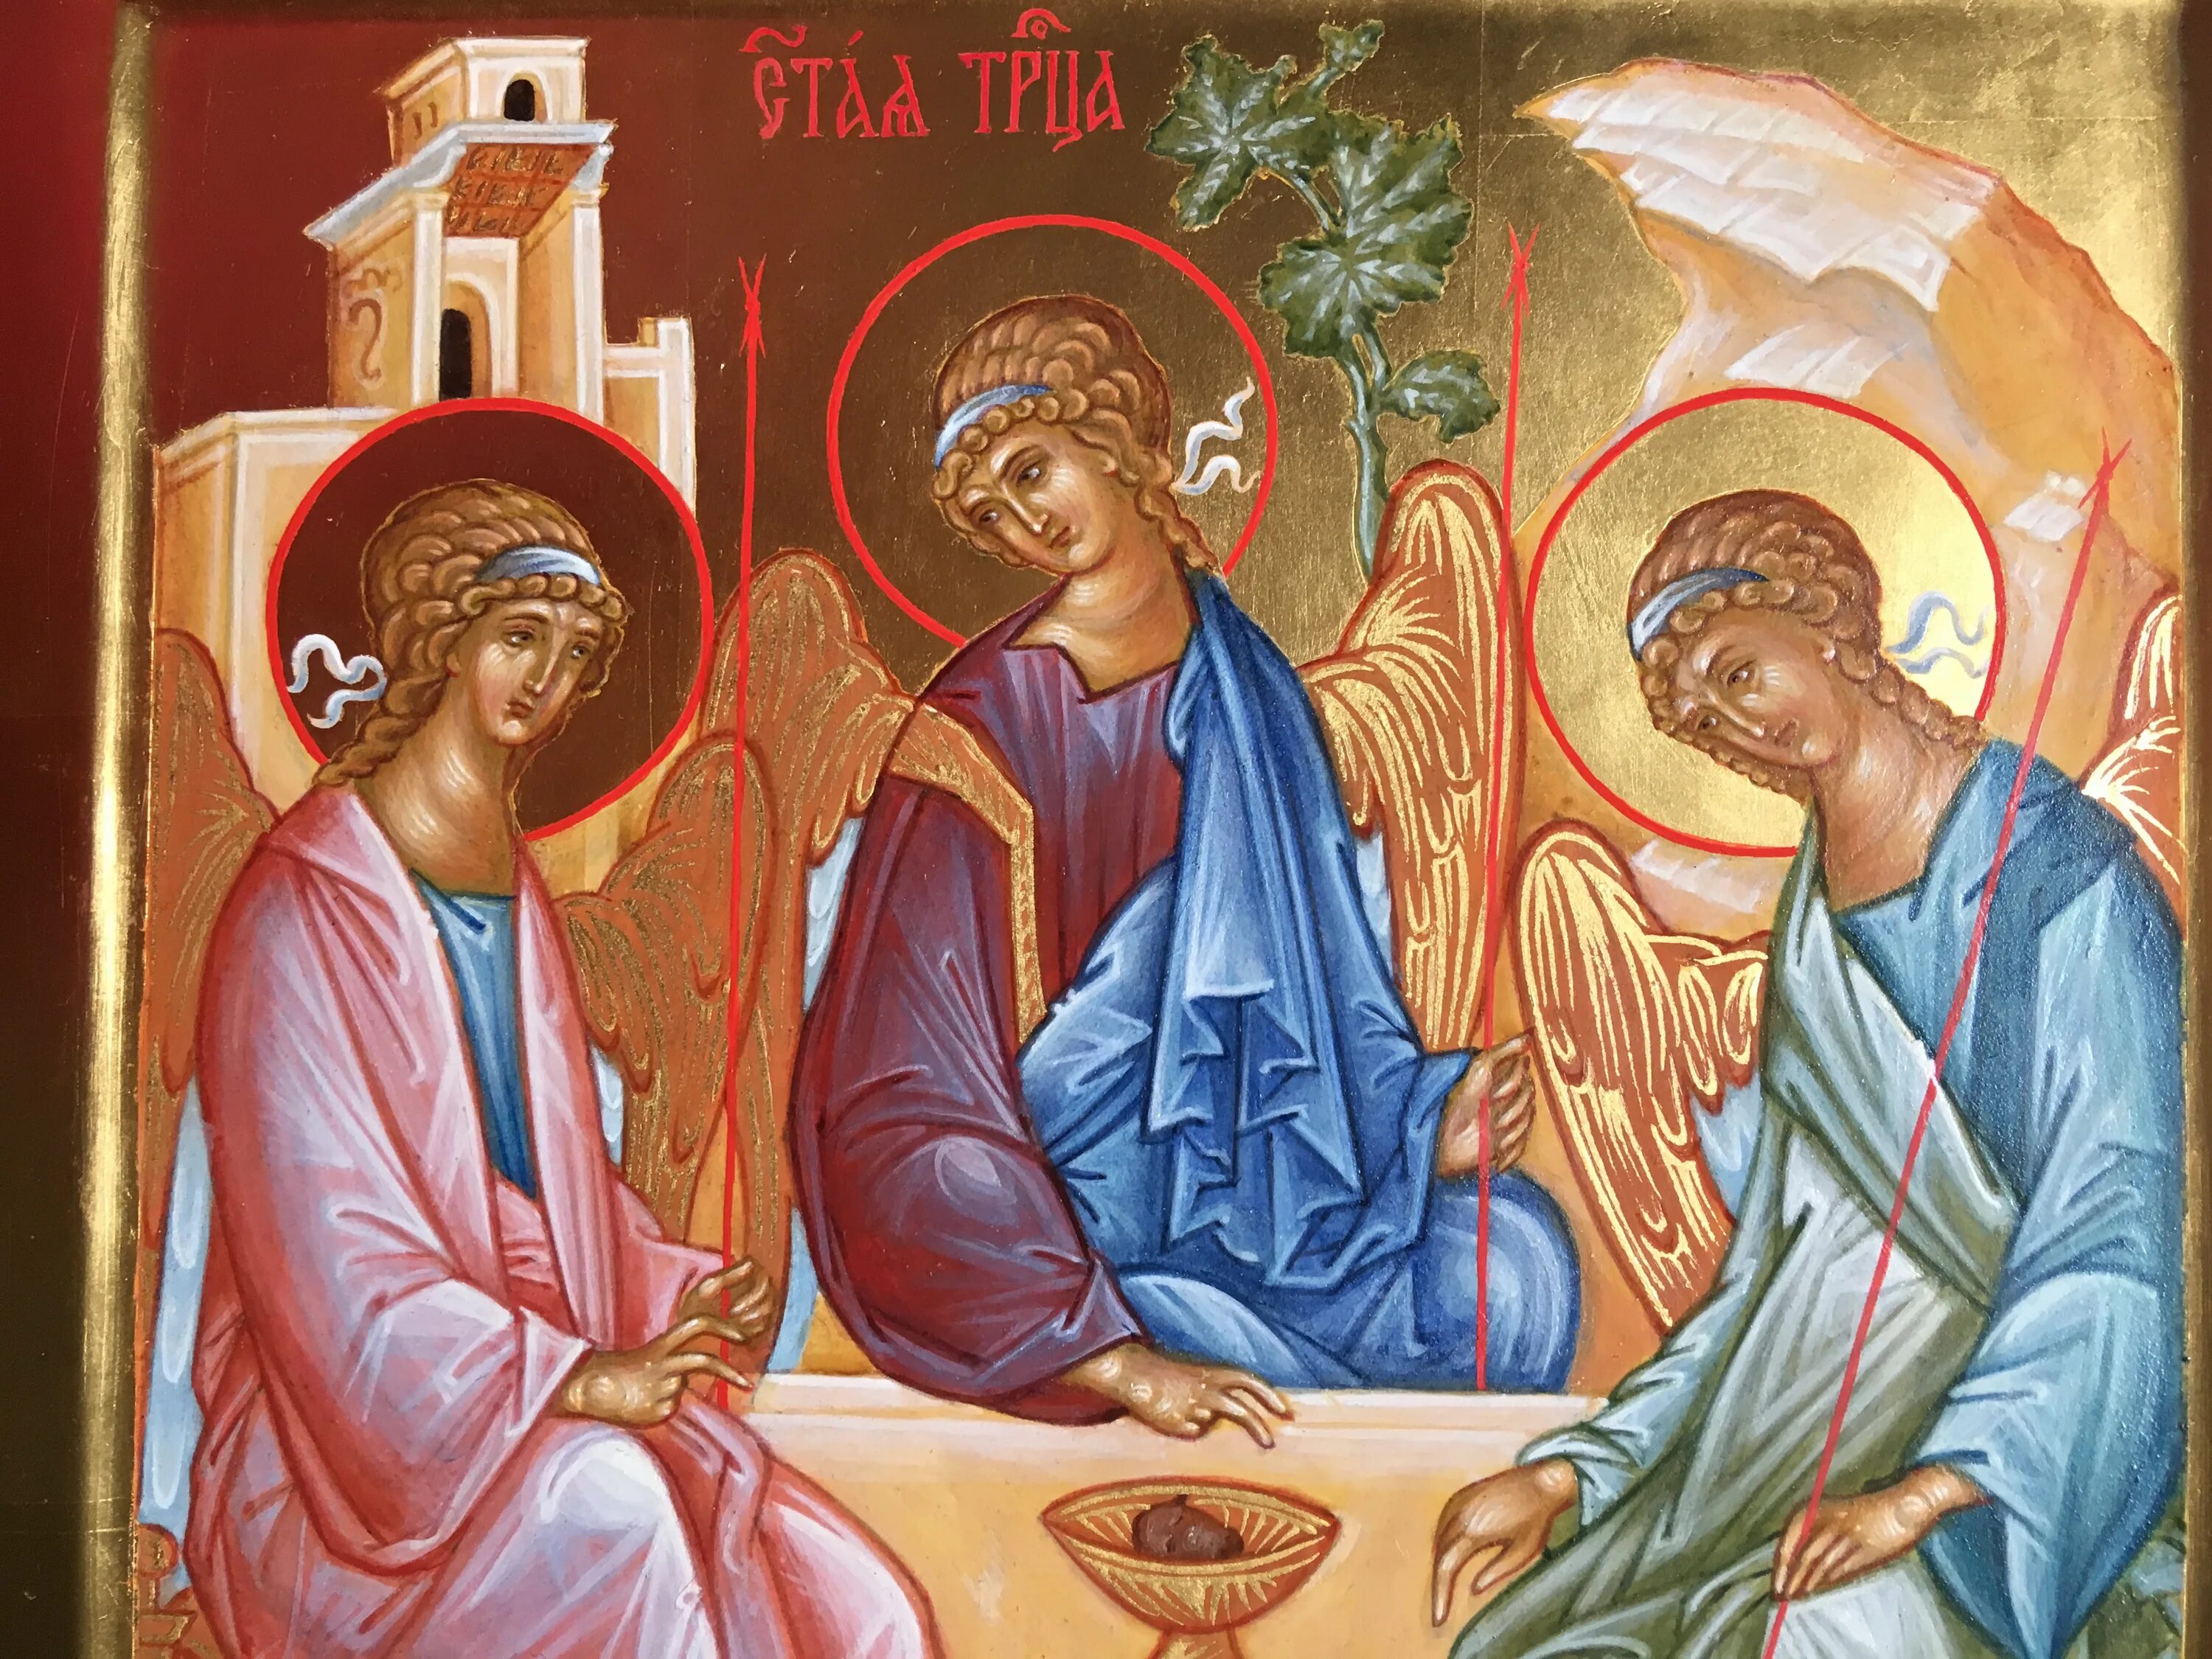 Три святая троица. Икона Святая Троица. Рублев Святая Троица икона. Пресвятая Троица икона Православие. Икона св. Троица.